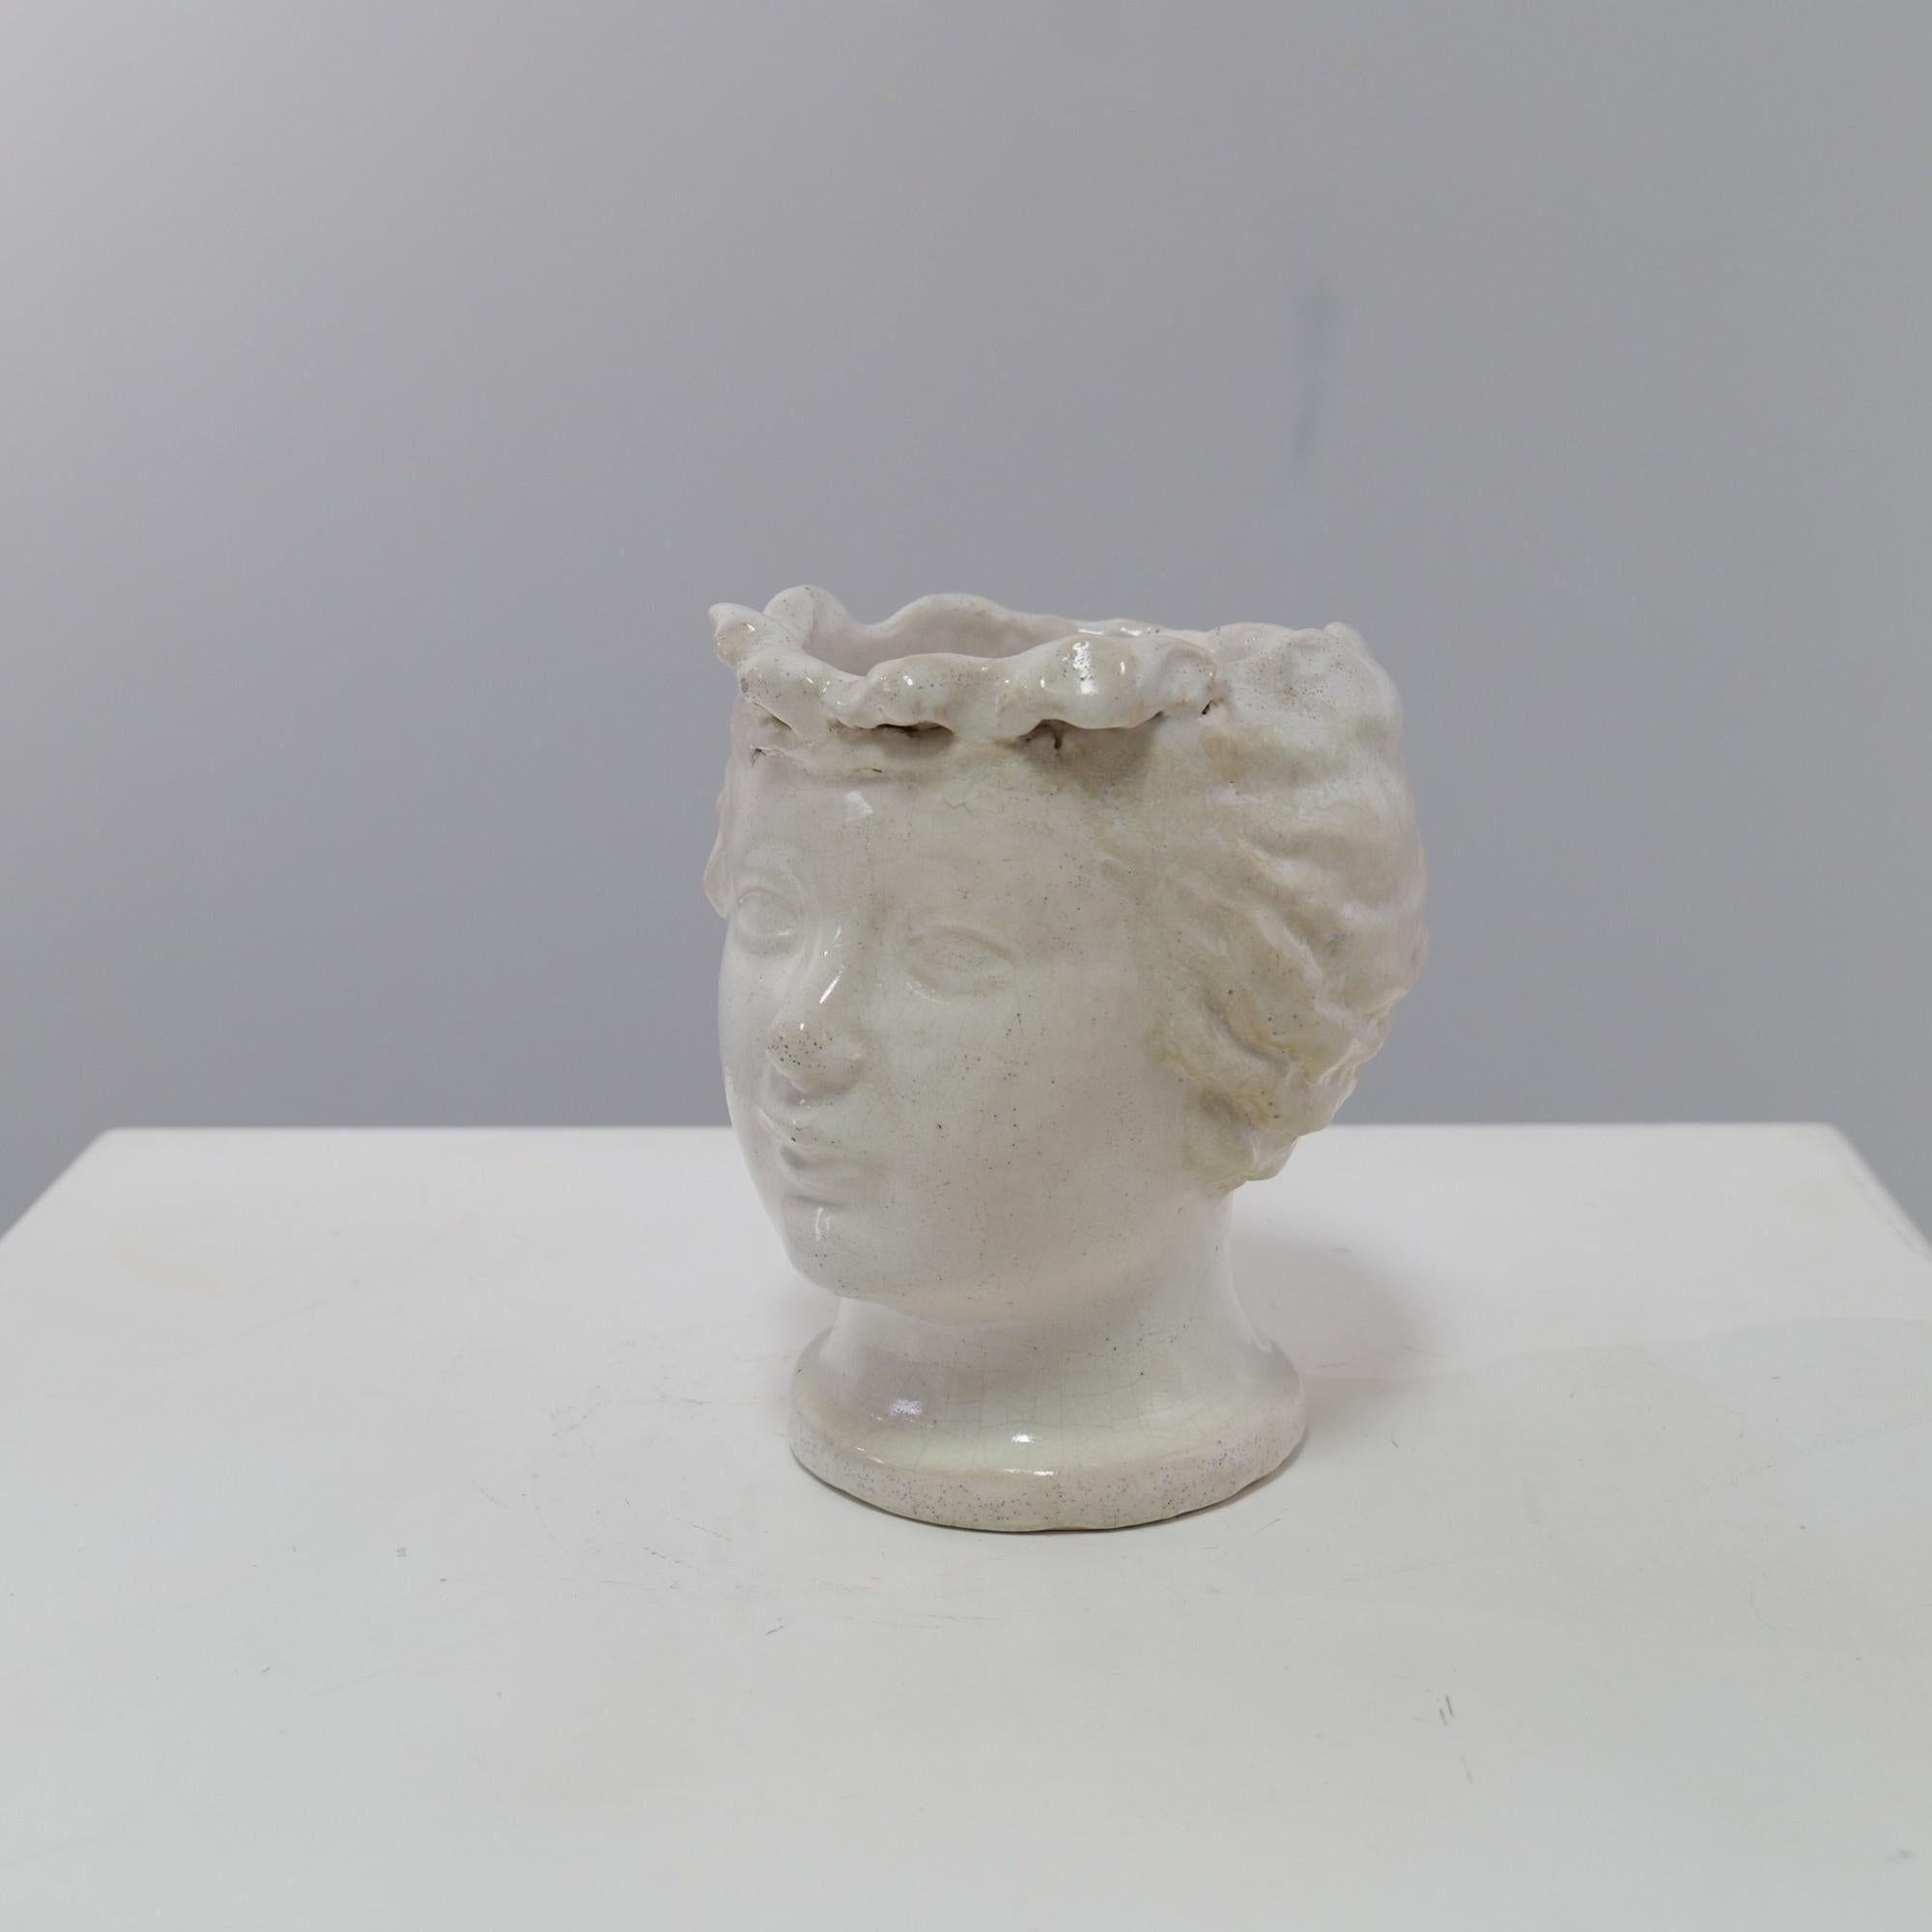 Die weiß glasierte Keramikvase in Form eines Kopfes von Max Barneaud wurde 1947 in Paris geschaffen.
Die gleichzeitige Darstellung eines Kopfes macht das Objekt sehr dekorativ.